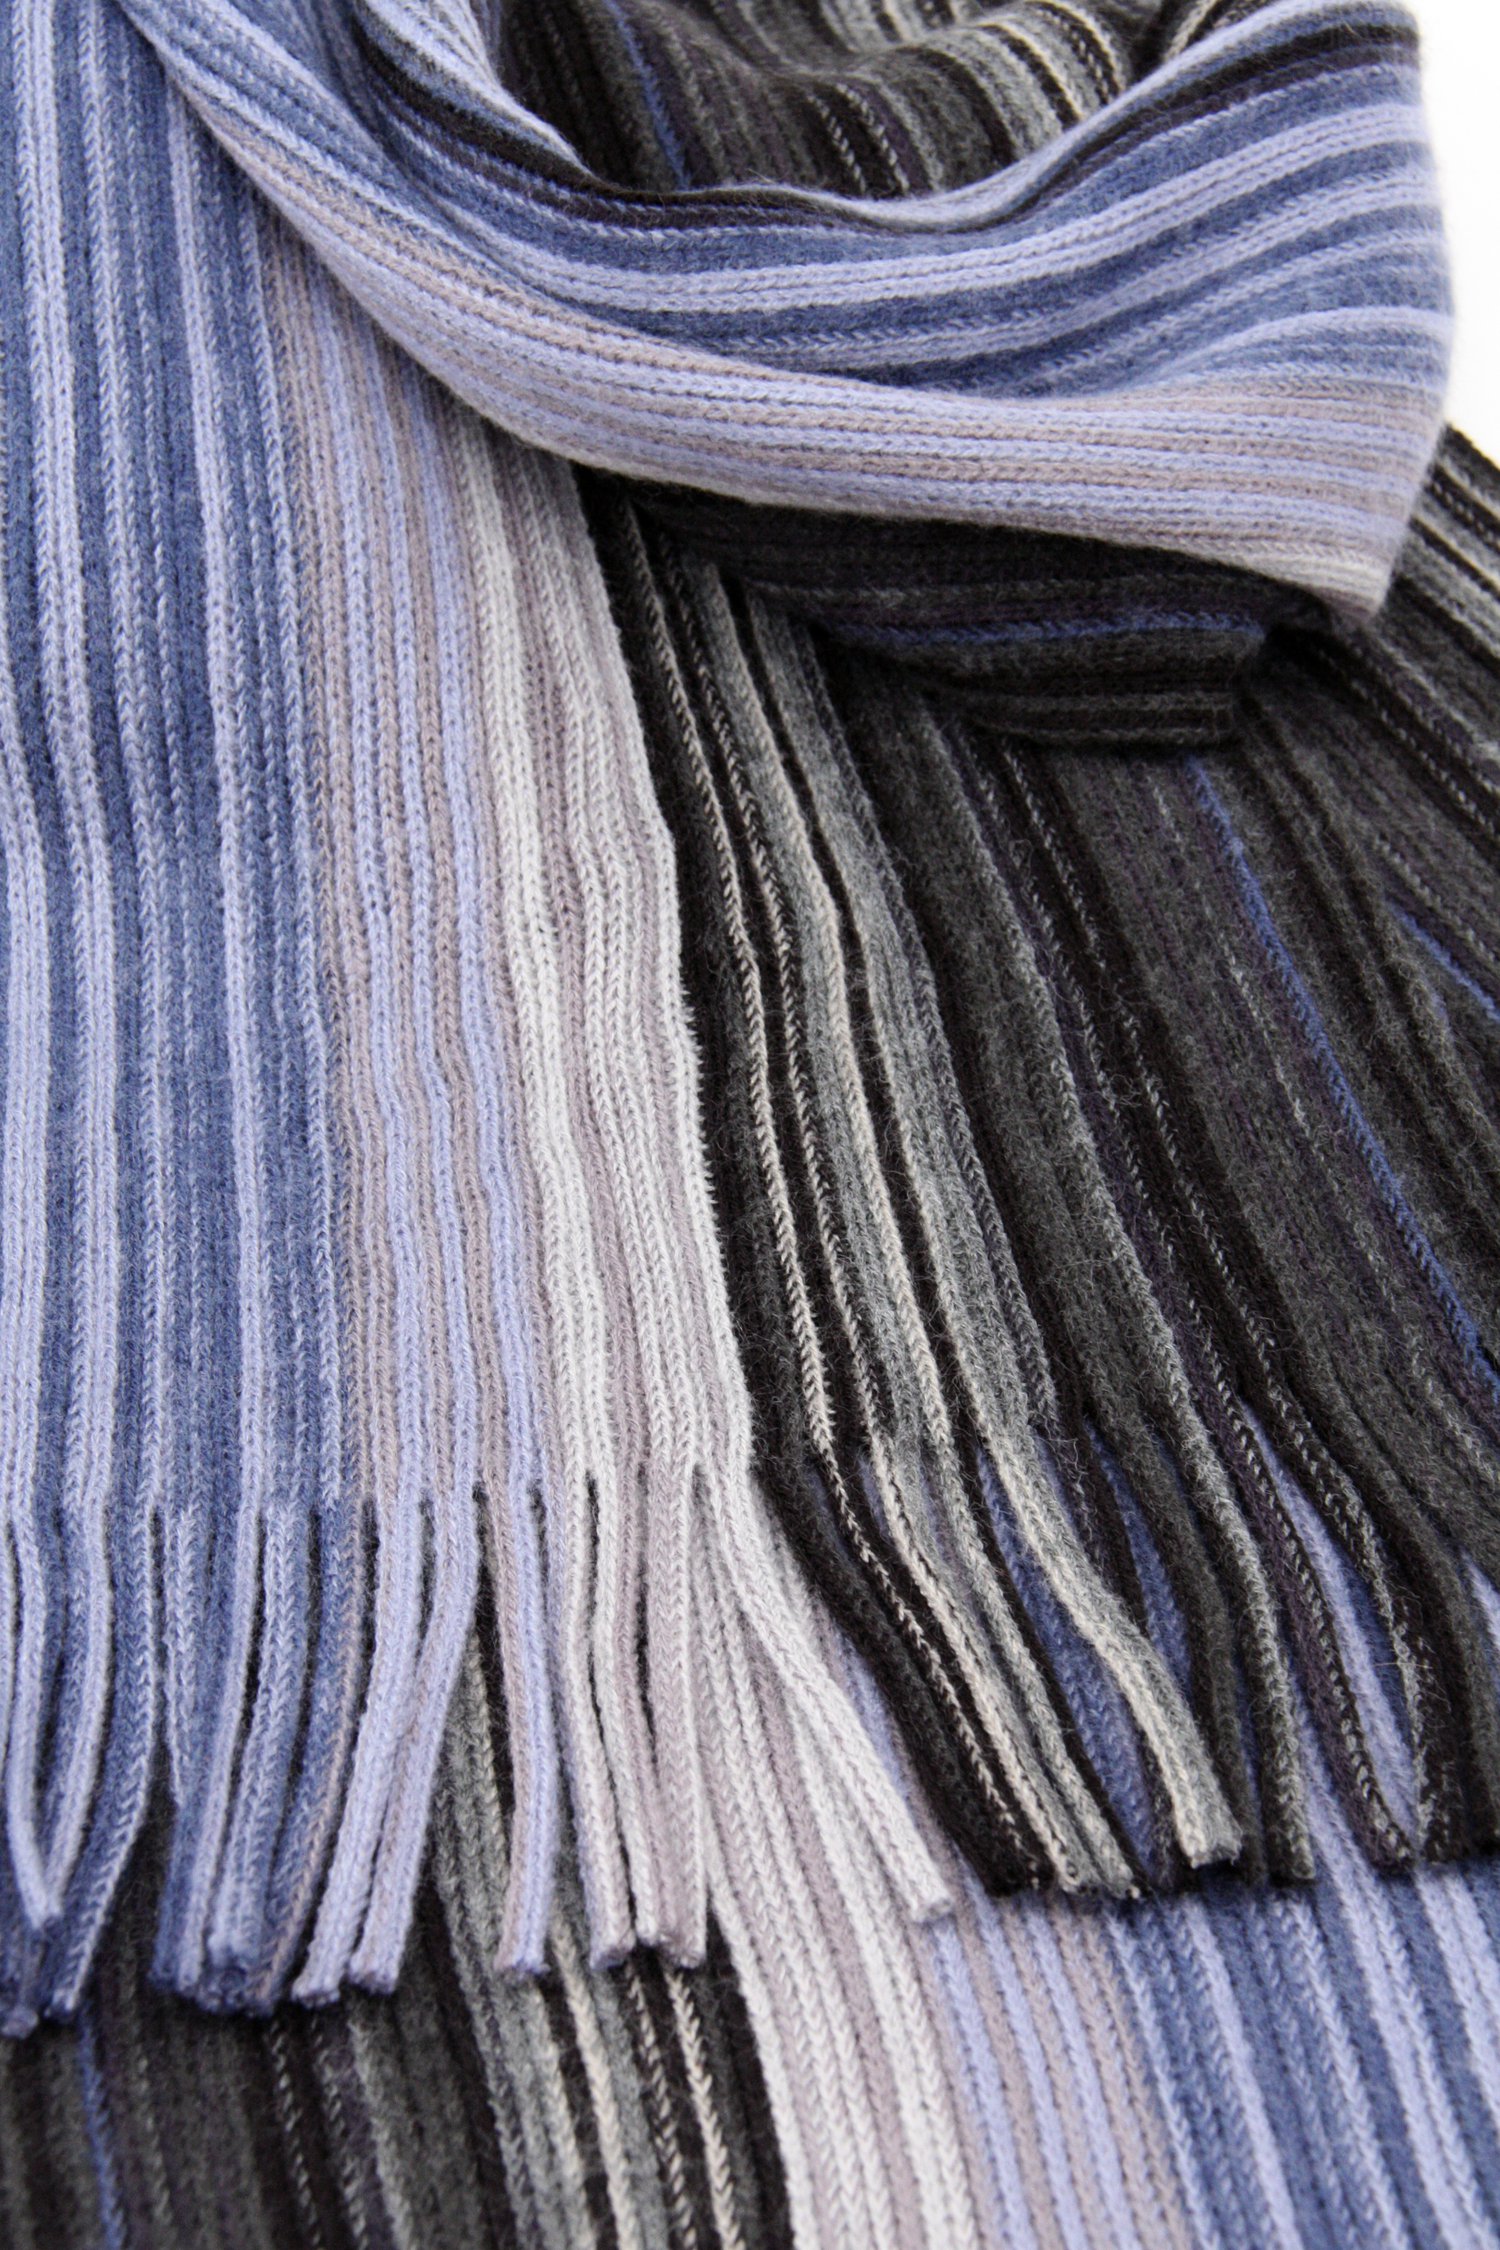 Sjaal met zwarte en blauwe strepen van Michaelis voor Heren